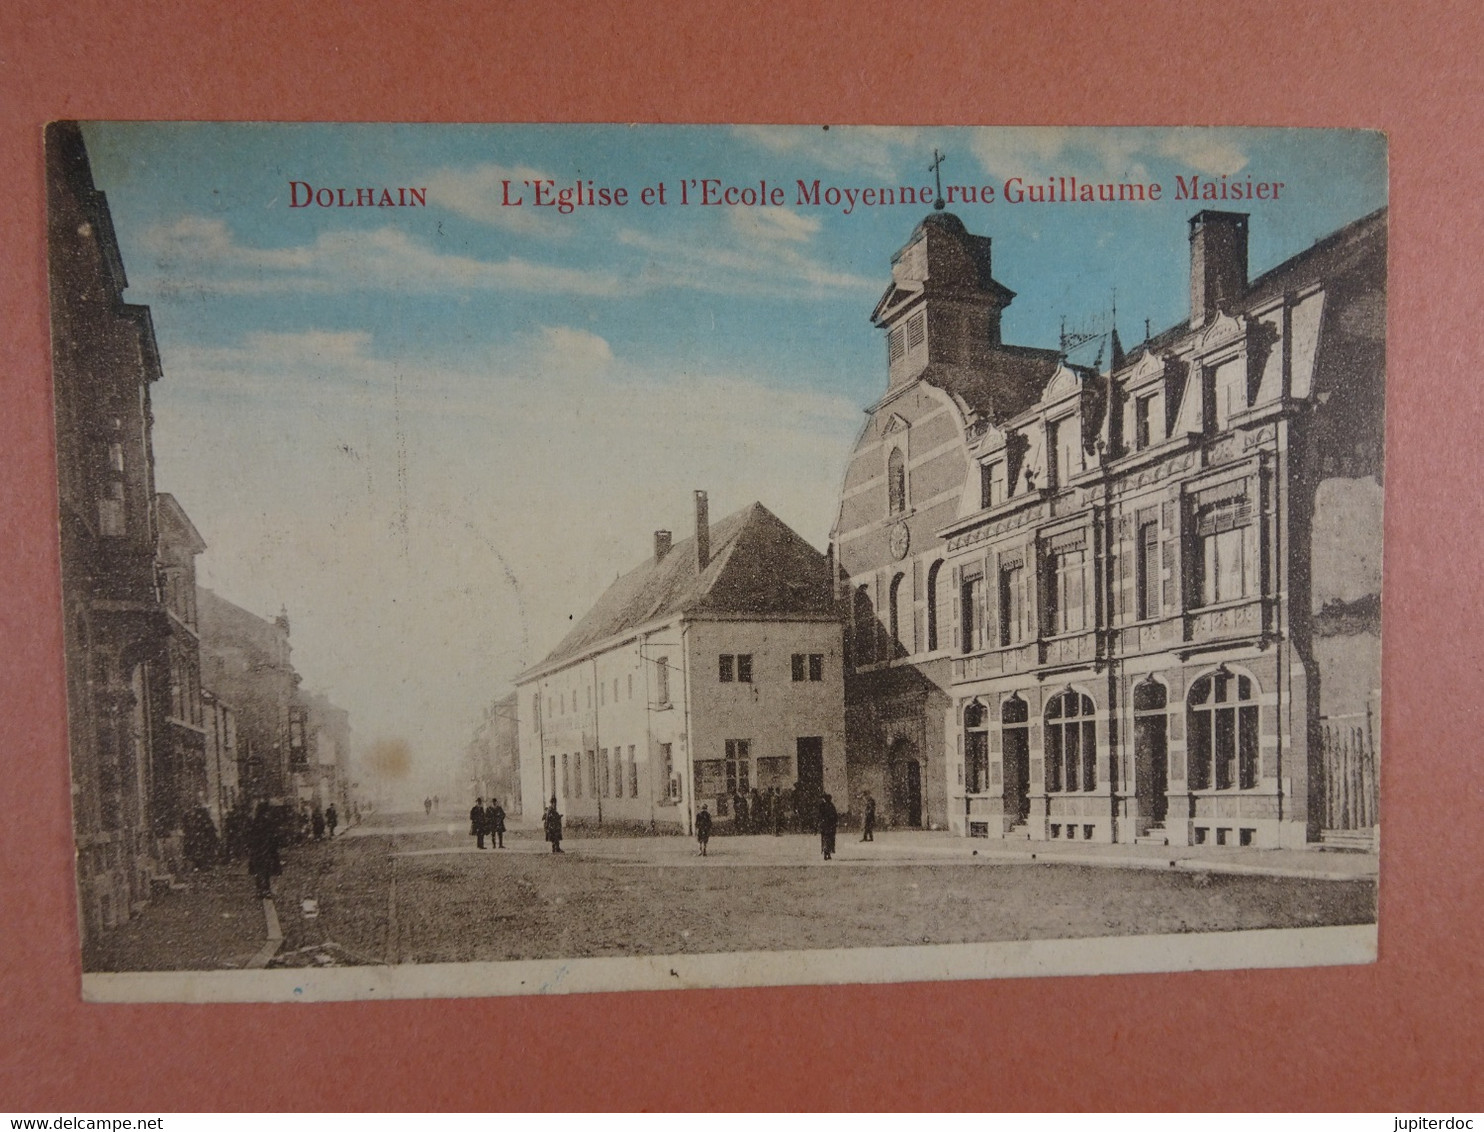 Dolhain L'Eglise Et L'Ecole Moyenne Rue Guillaume Maisier - Limbourg